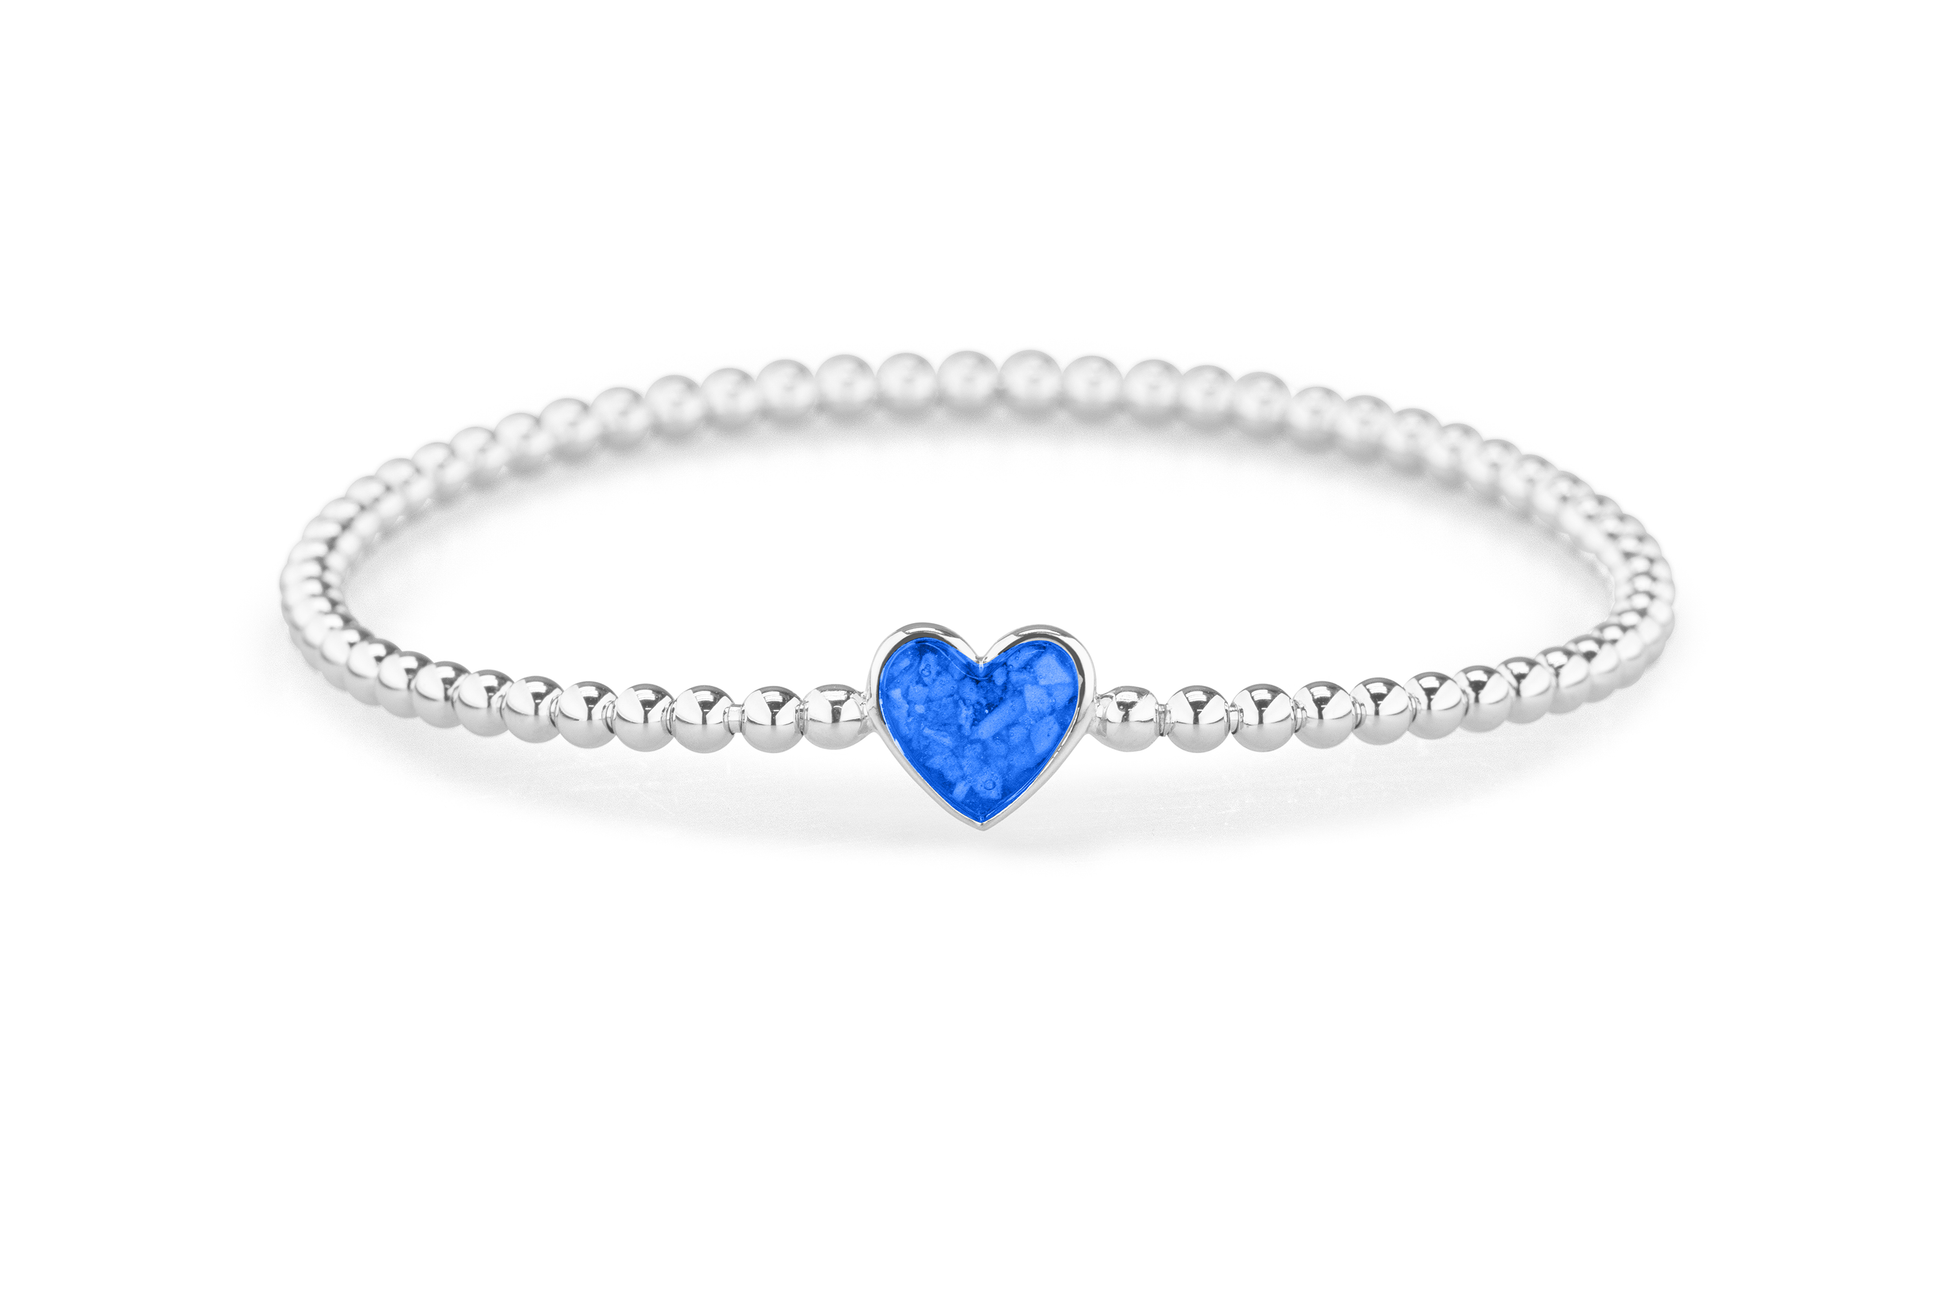 Flexibele as armband met hart als compartiment voor as of haar, gedenksieraden. Blue